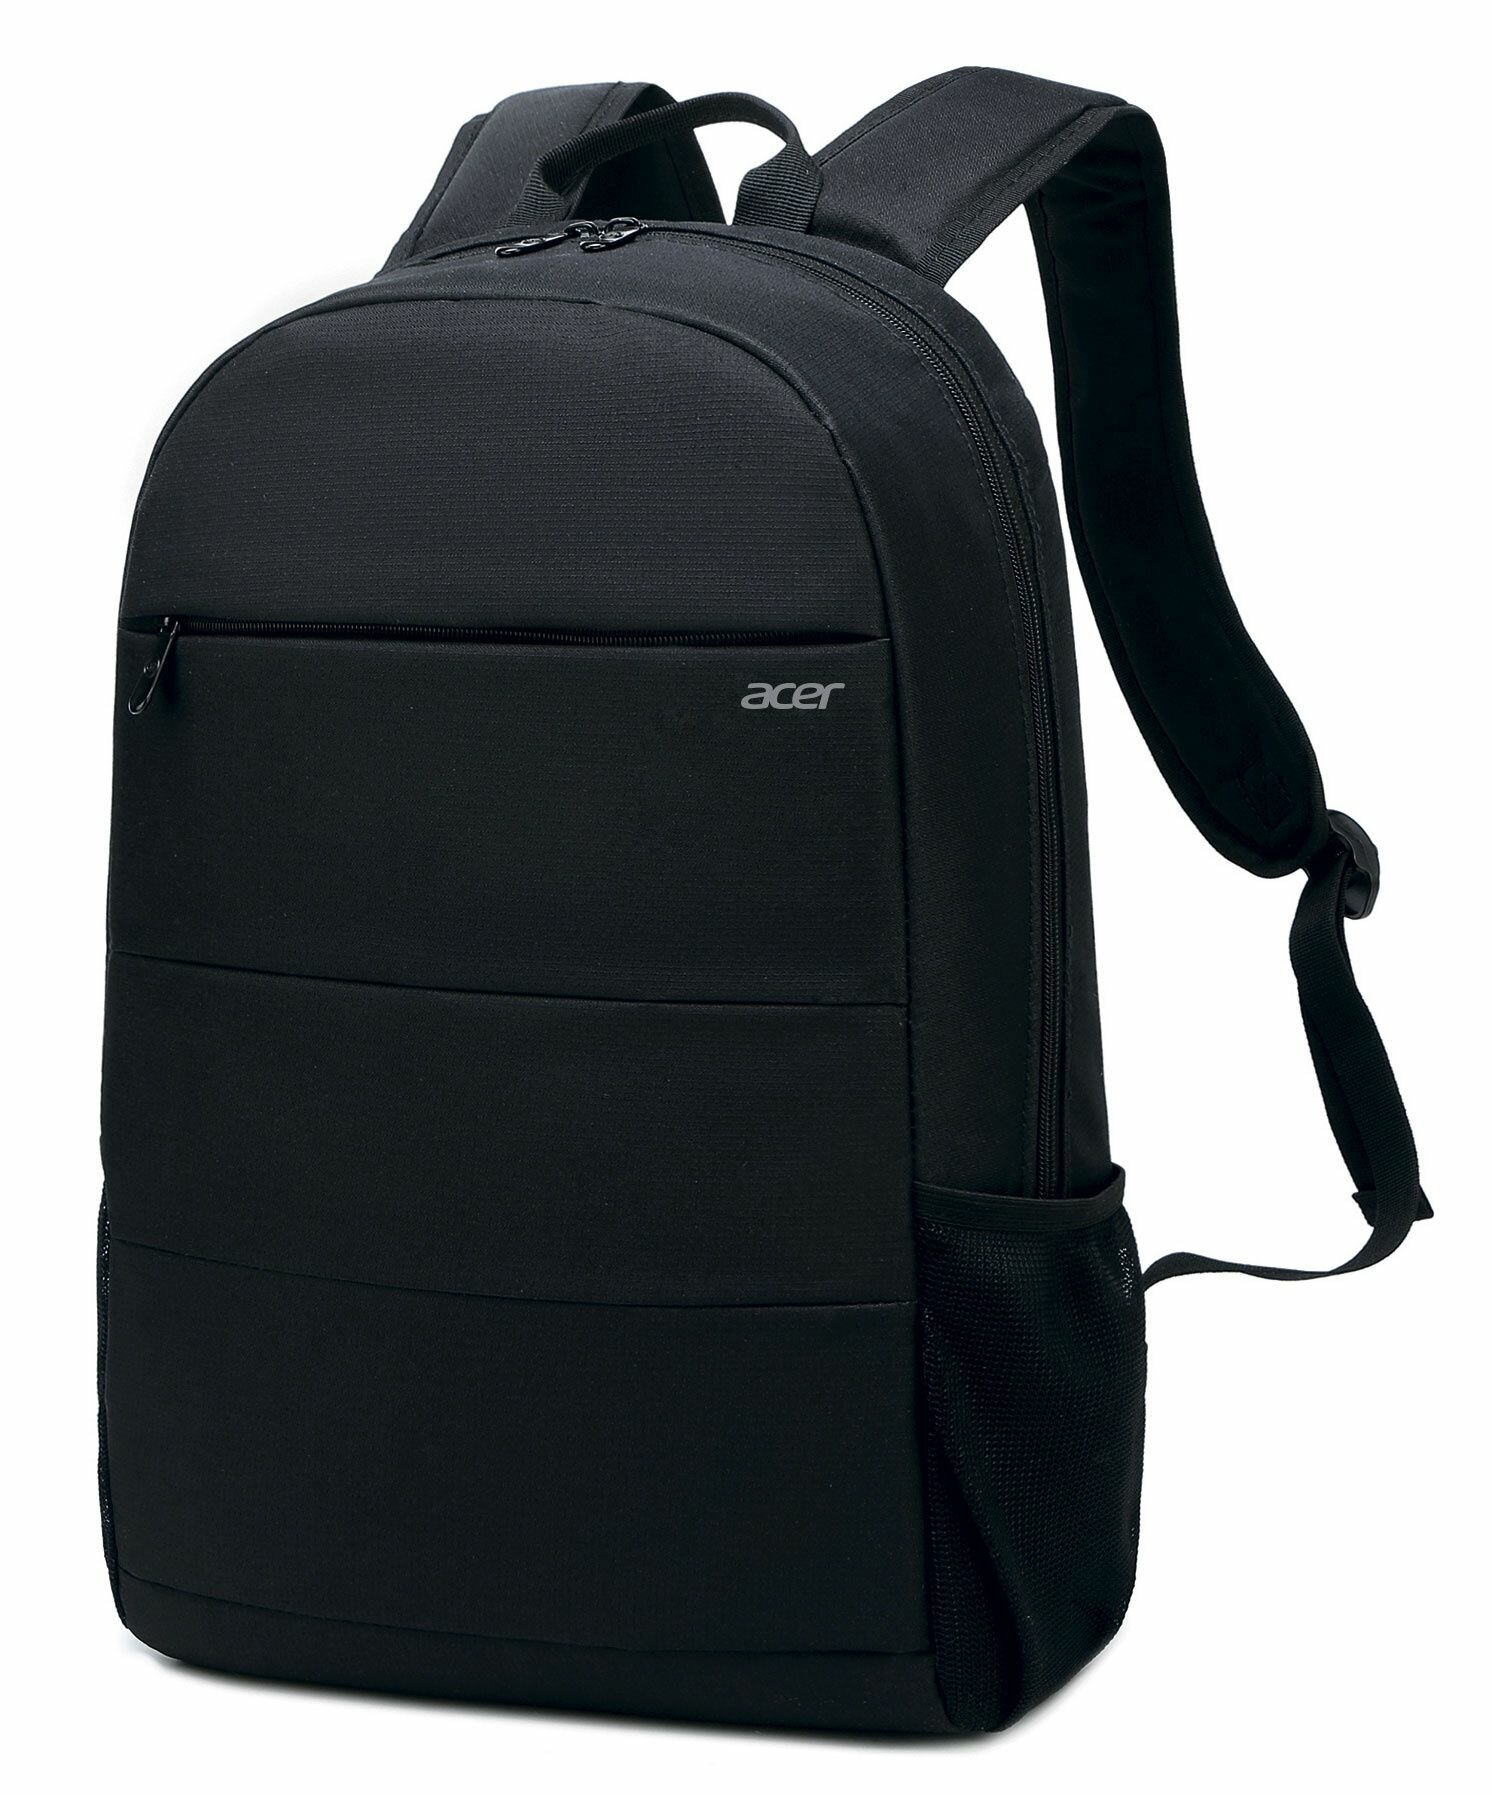 Рюкзак для ноутбука 15.6" Acer LS series OBG204 черный нейлон женский дизайн (ZL. BAGEE.004)